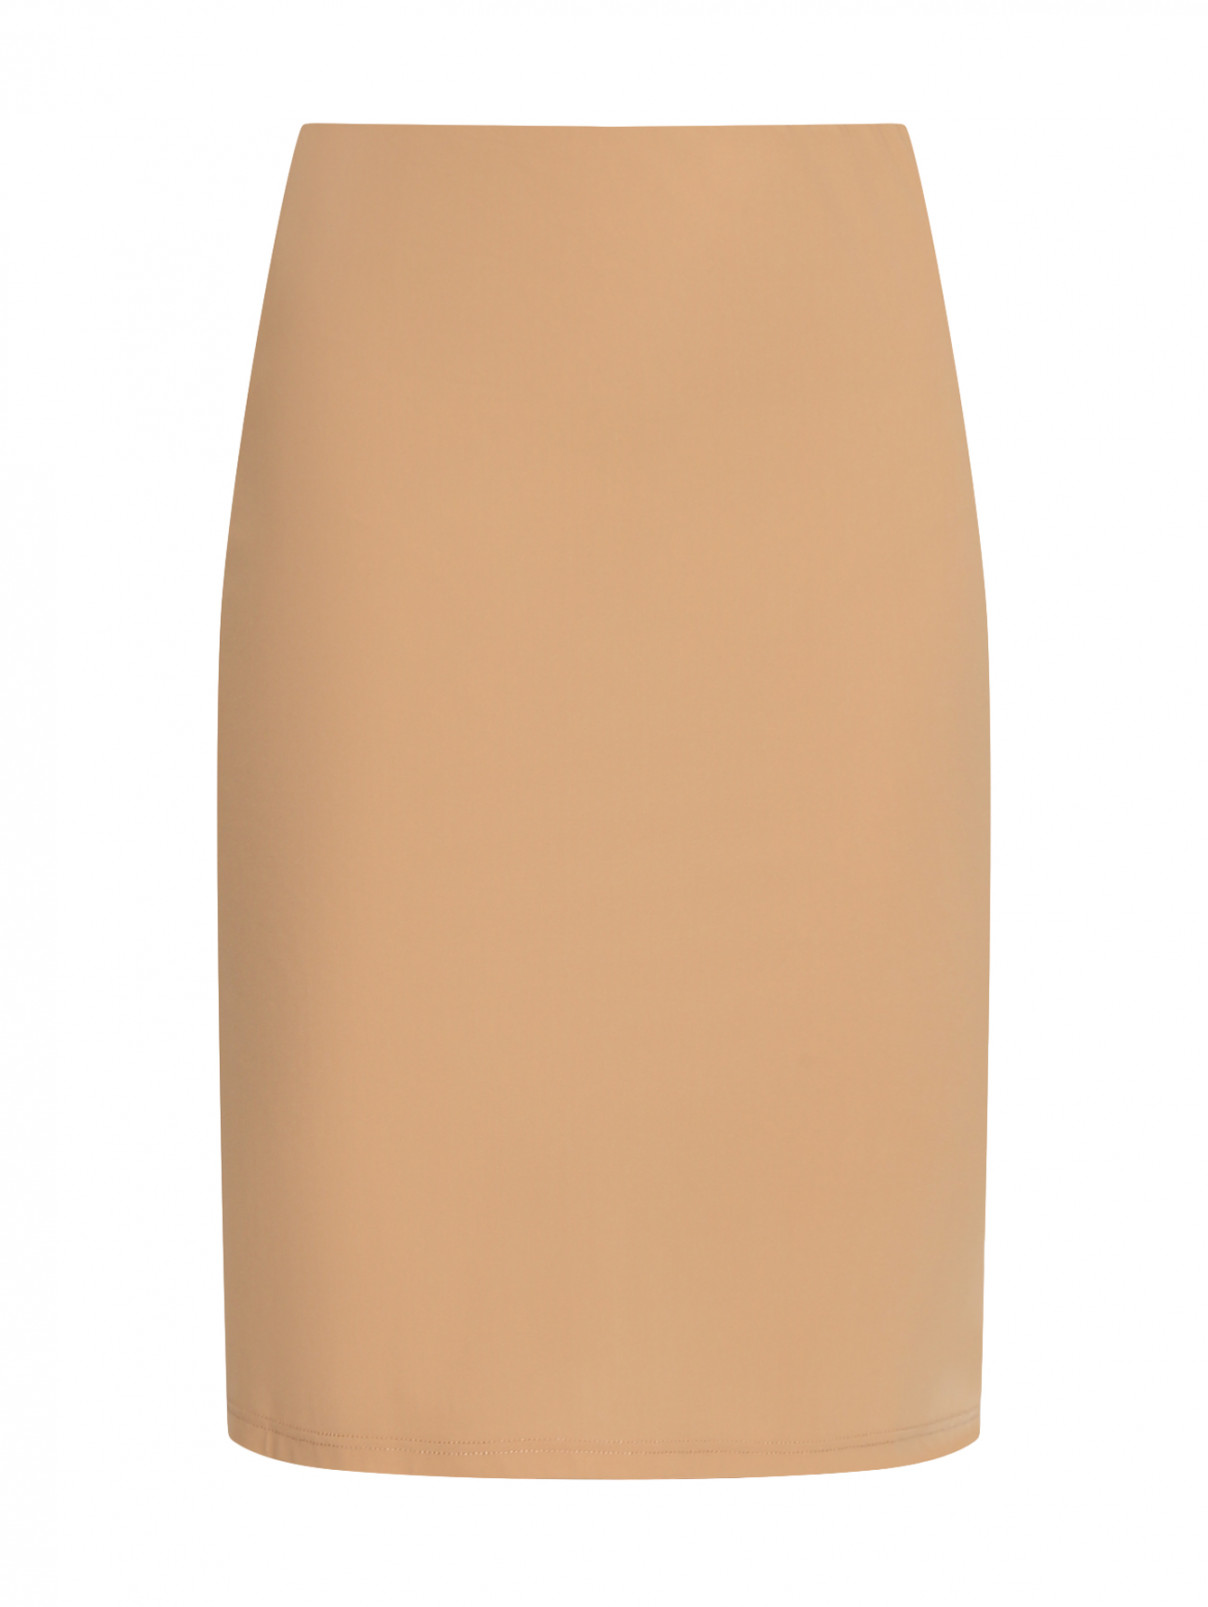 Эластичная юбка на резинке Jil Sander  –  Общий вид  – Цвет:  Бежевый